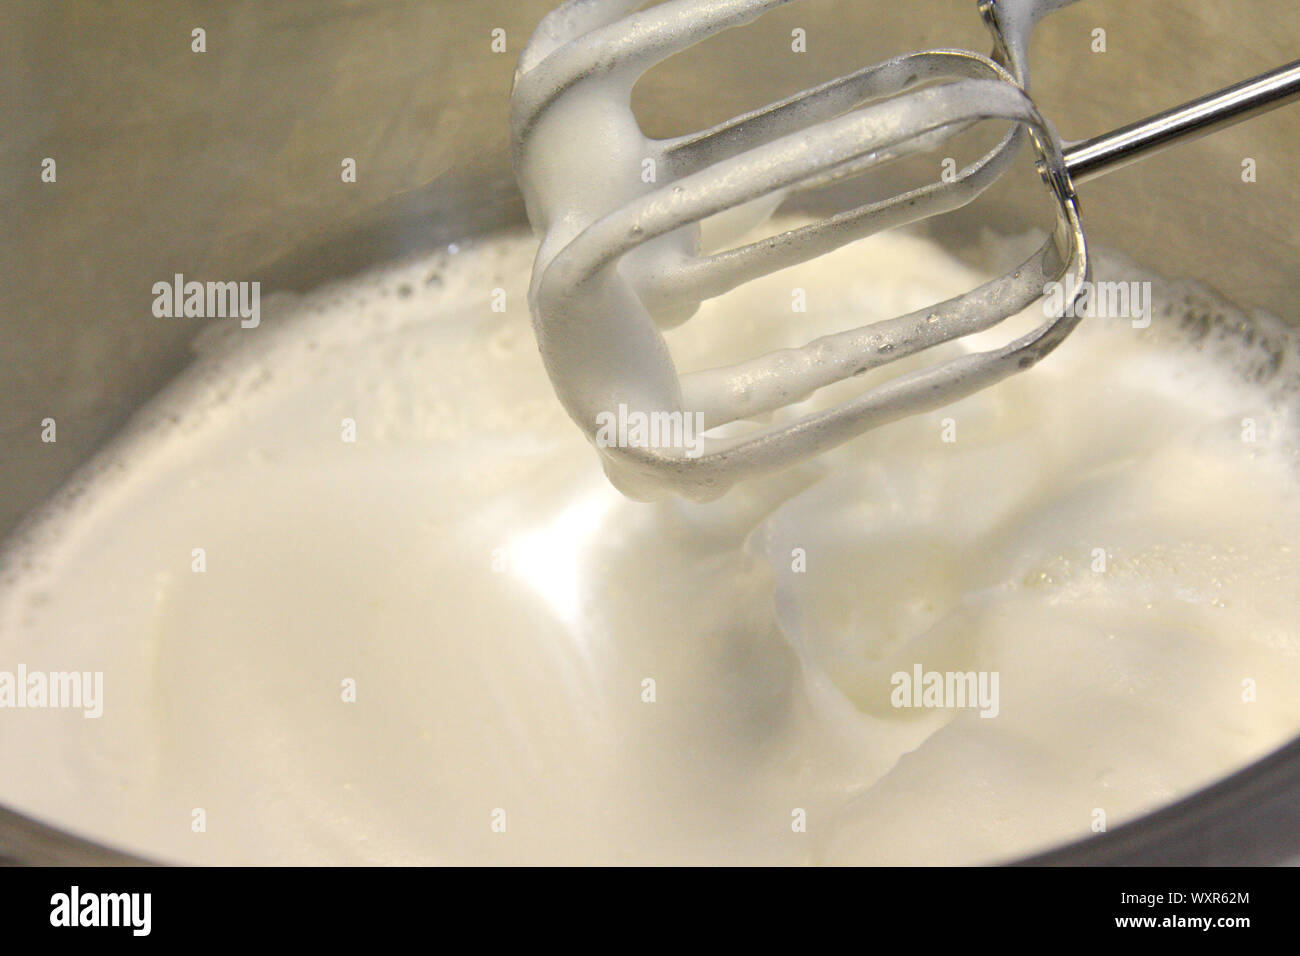 Geschlagener Eischnee und Zucker, Edelstahl Topf zum Backen cream Topping - eine moderne Küche Mixer verwendet das Eiweiß zu schlagen. Stockfoto